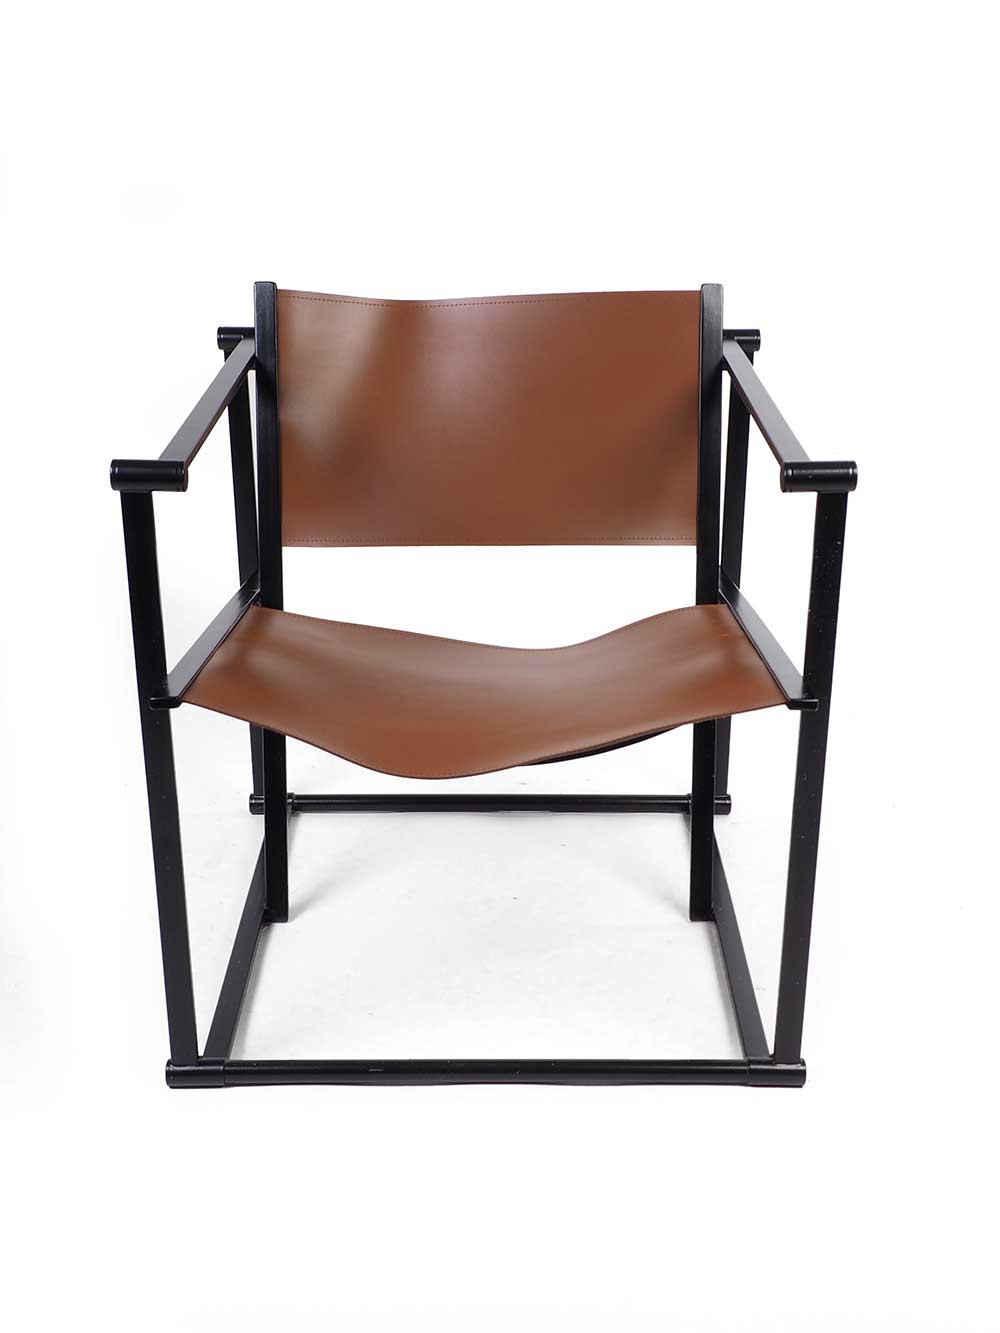 FM60 lounge chair - Pastoe - Radboud van Beekum